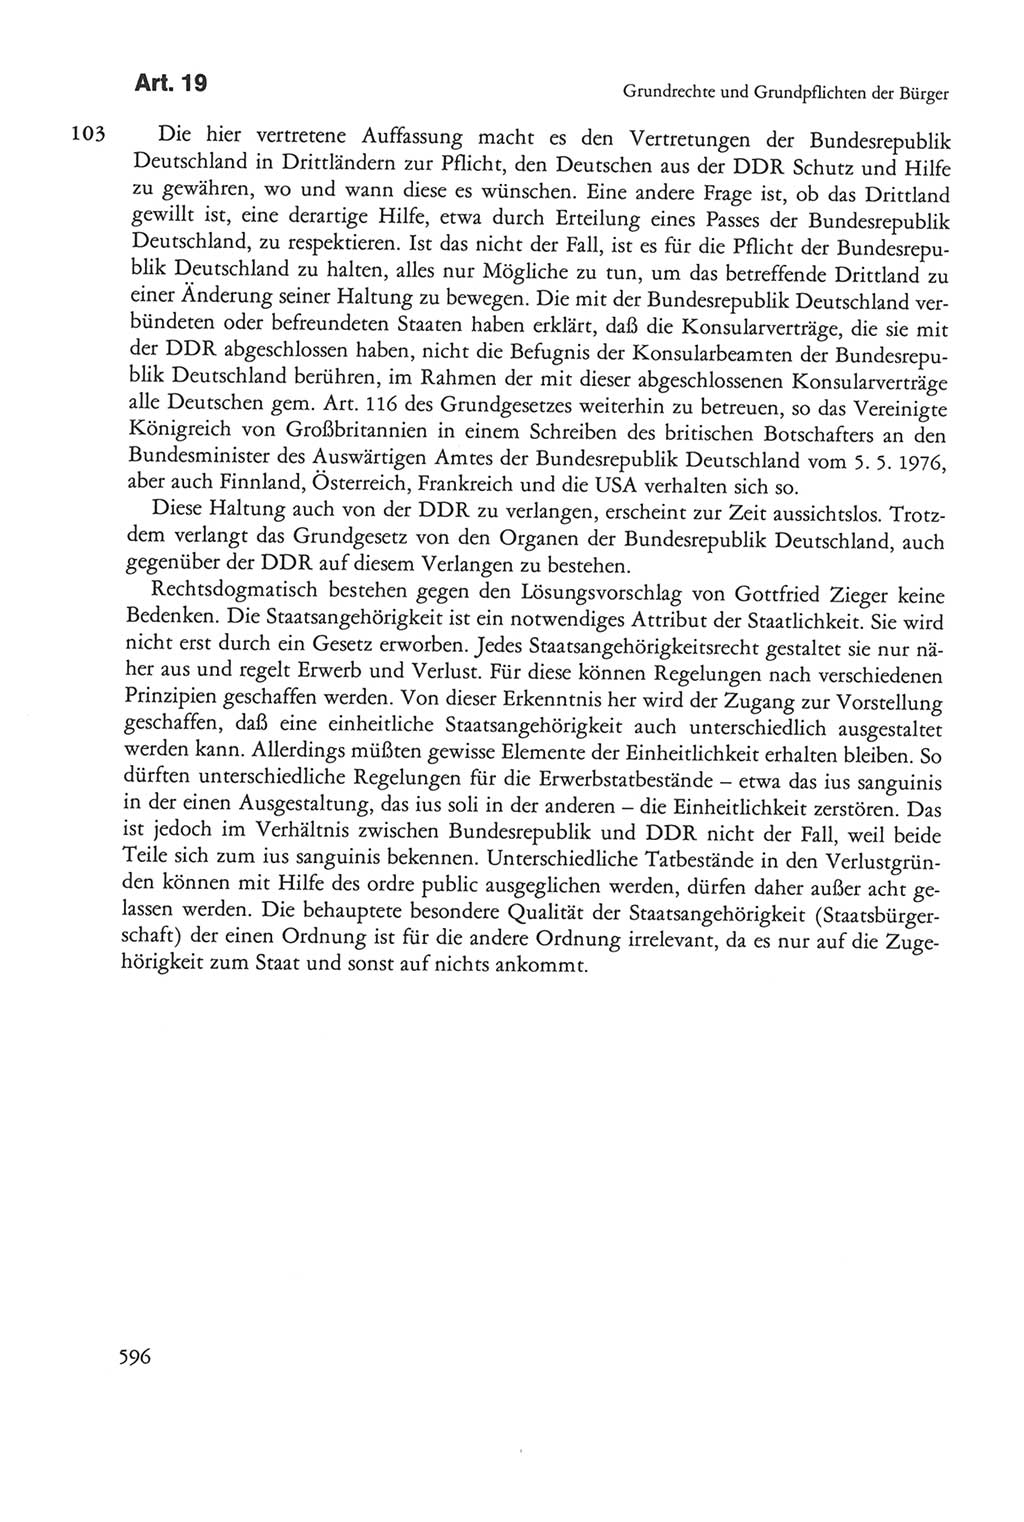 Die sozialistische Verfassung der Deutschen Demokratischen Republik (DDR), Kommentar 1982, Seite 596 (Soz. Verf. DDR Komm. 1982, S. 596)